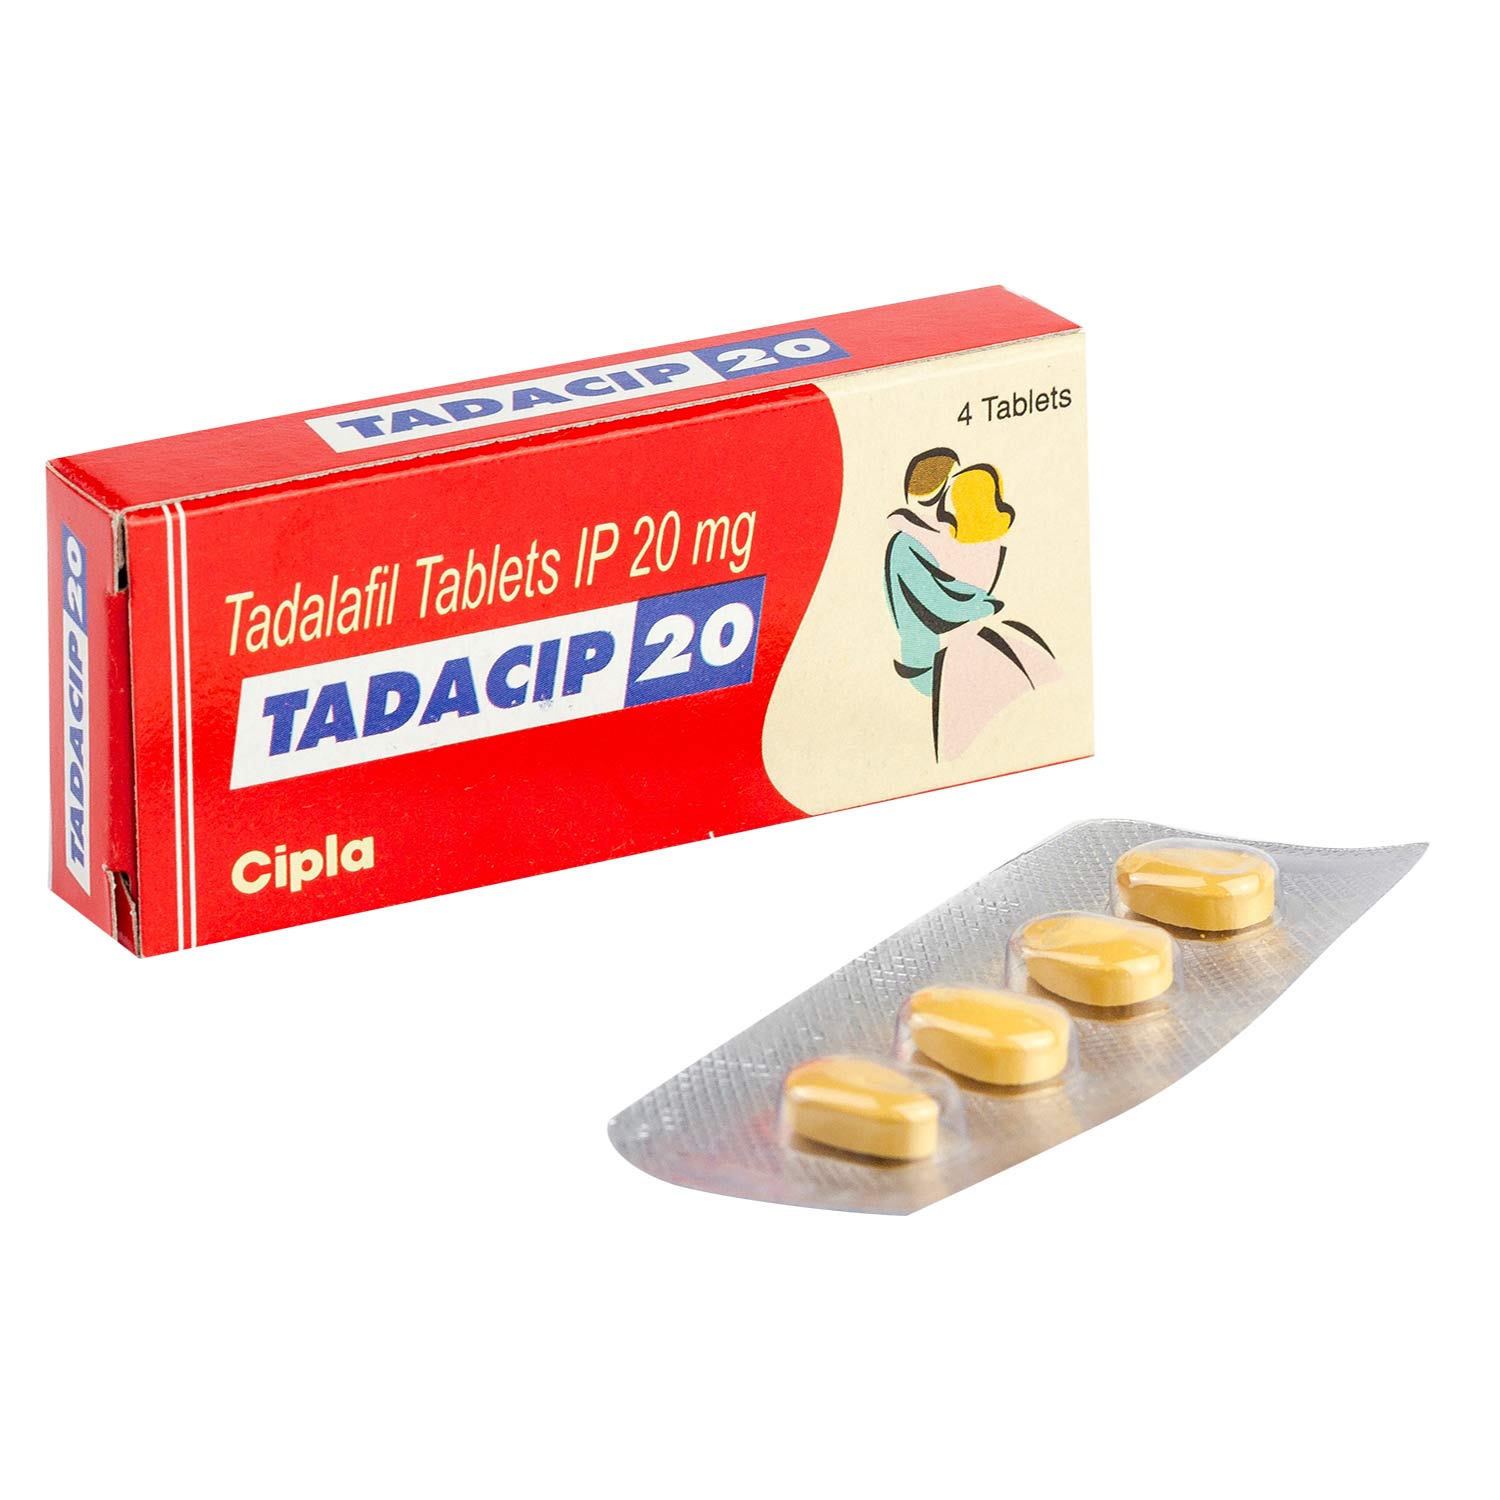 Tadacip-20-1-1500x1500-1500x1500.jpg